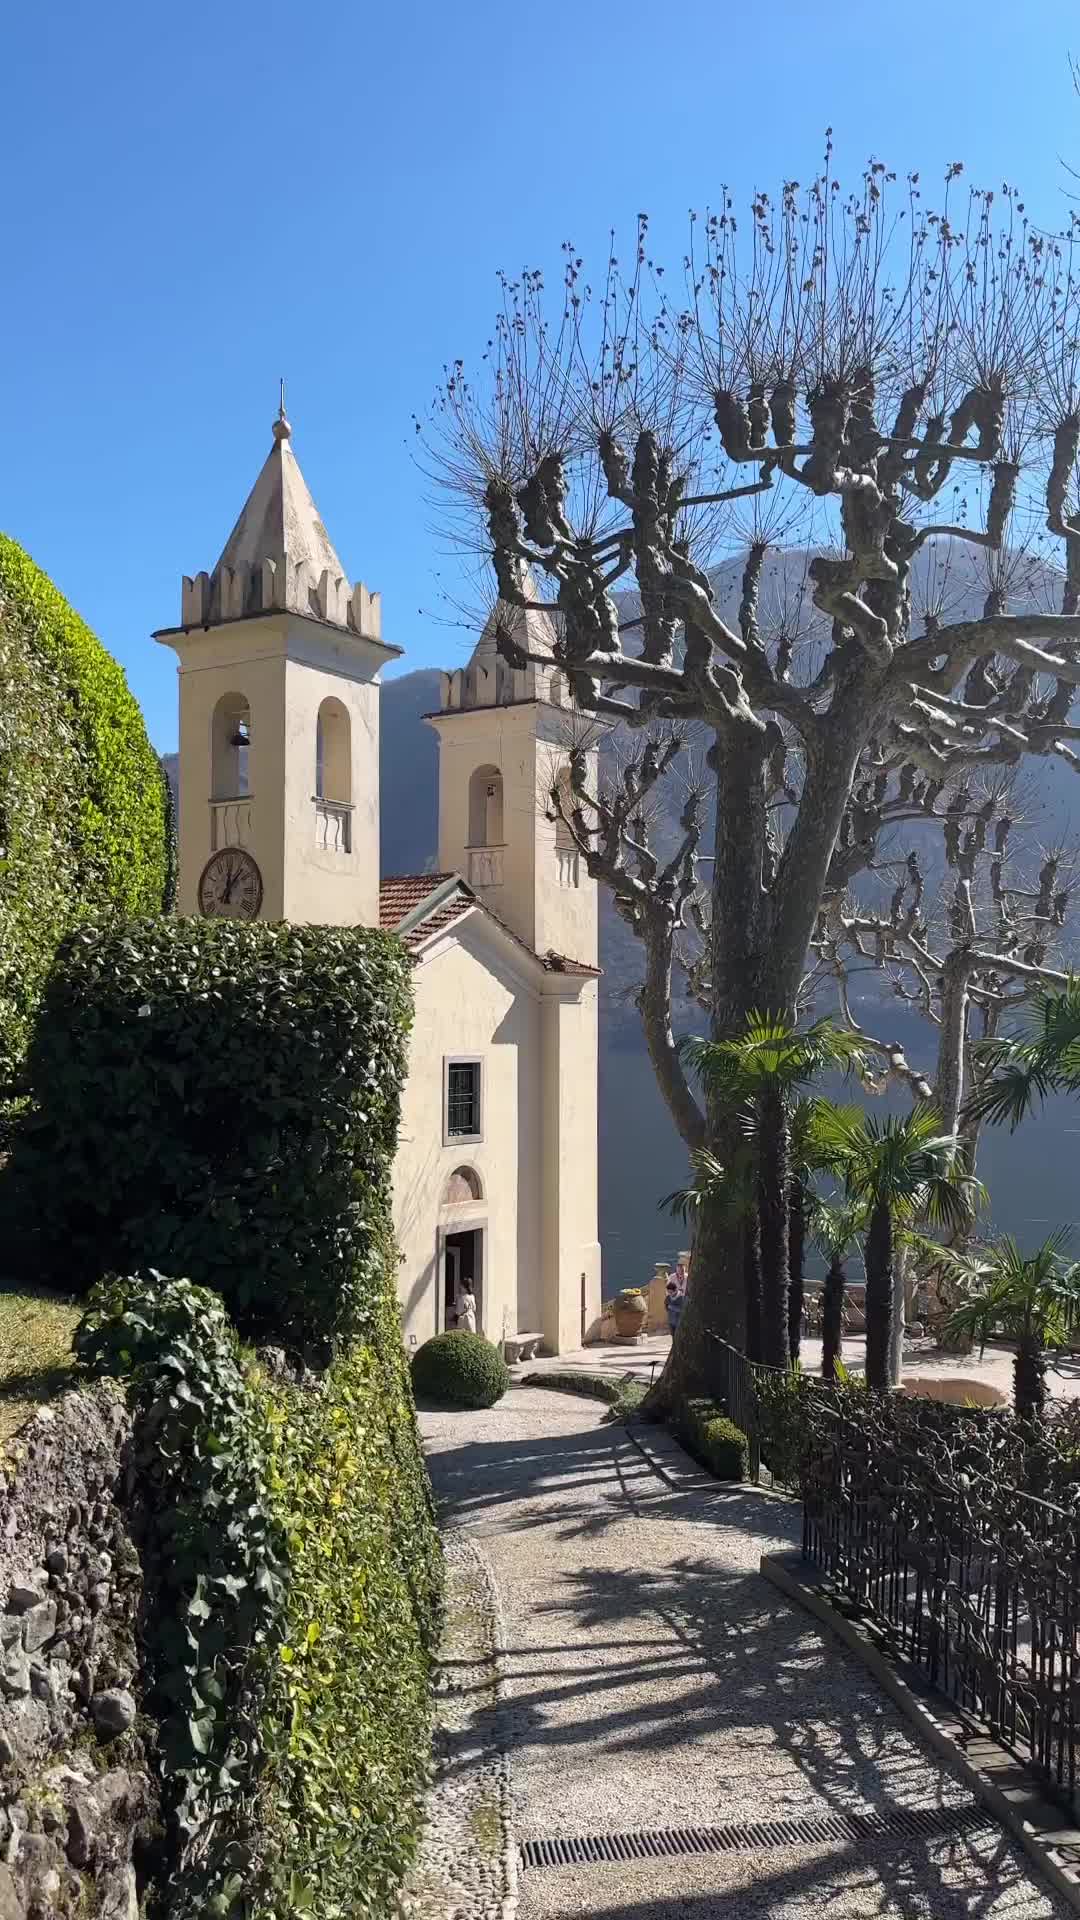 Discover Villa del Balbianello on Lake Como, Italy